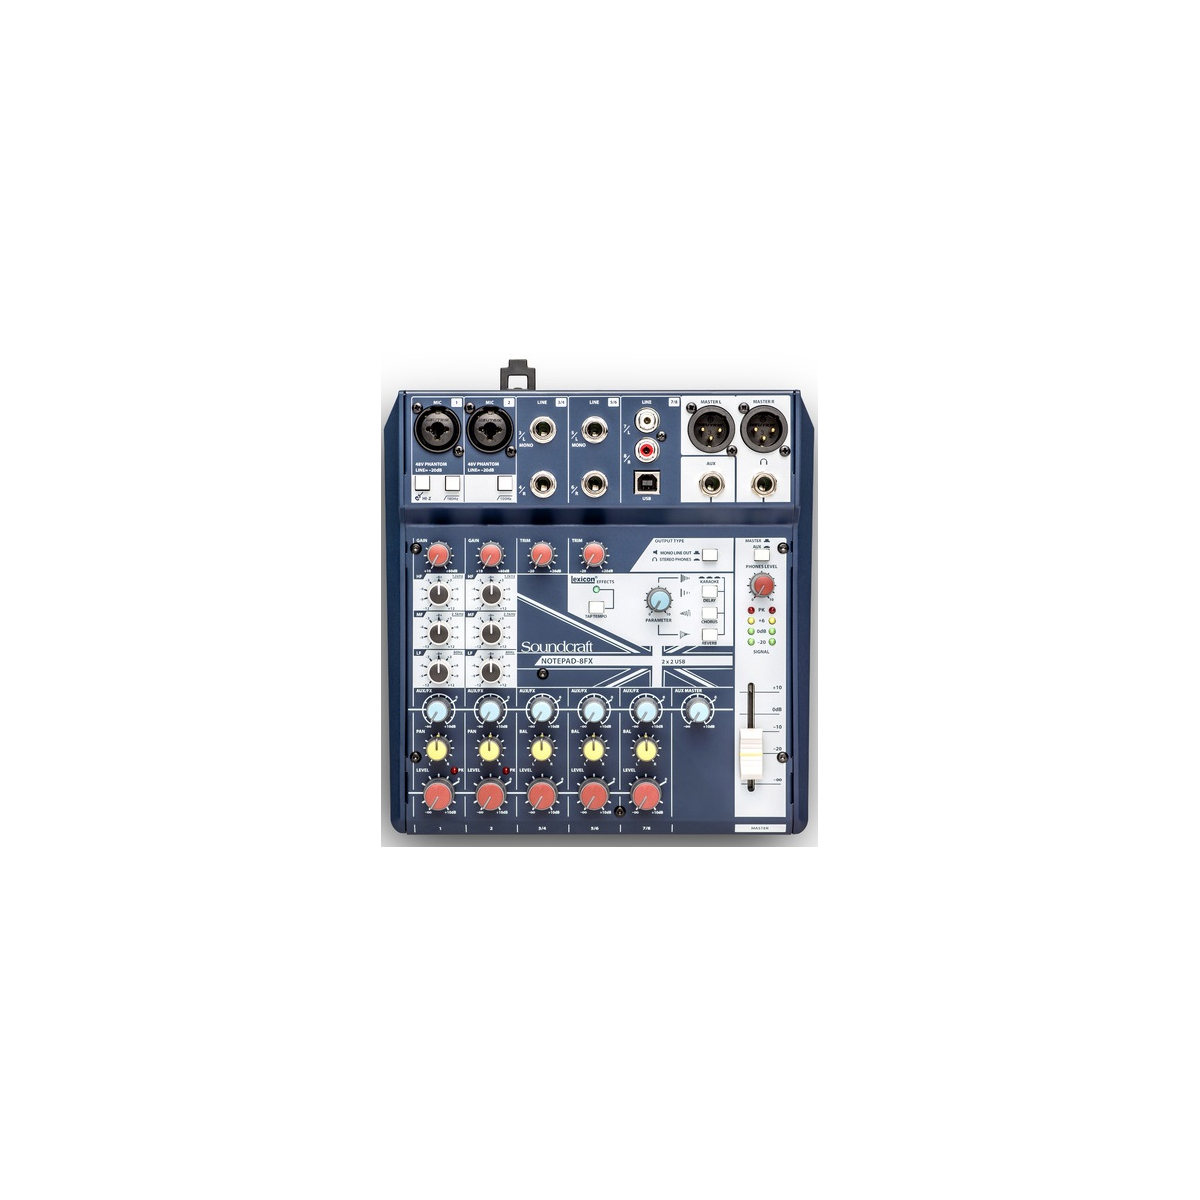 Consoles analogiques - Soundcraft - NotePad-8FX